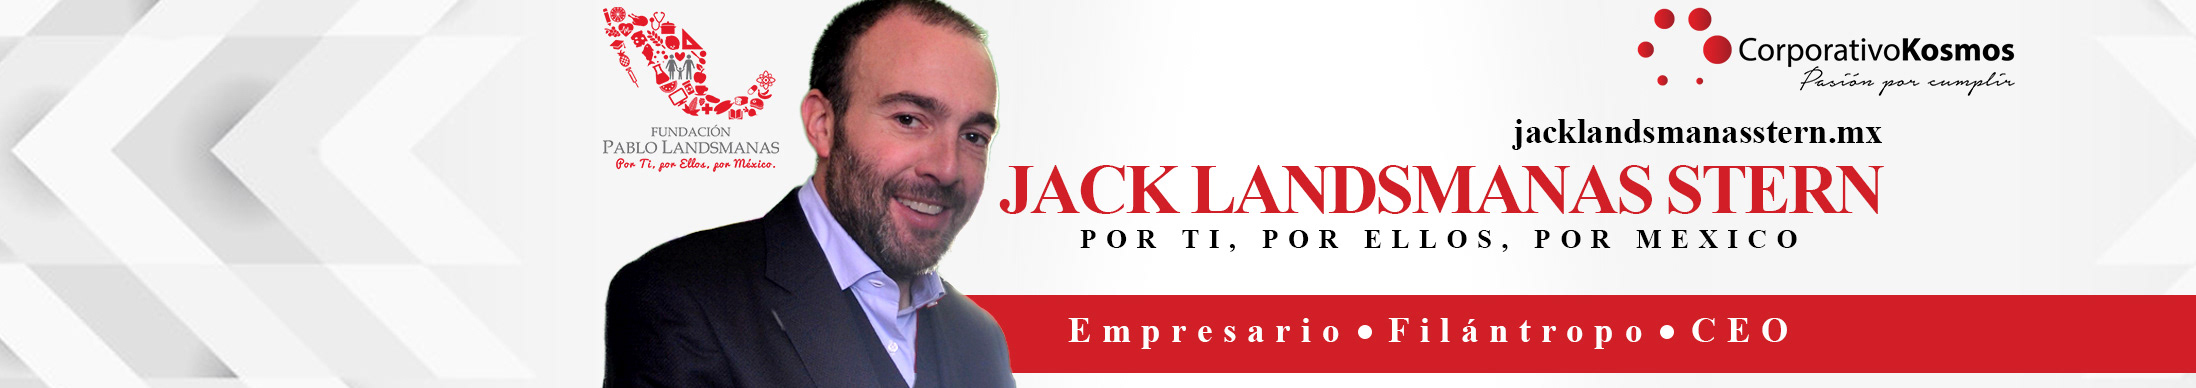 Jack Landsmanas's profile banner